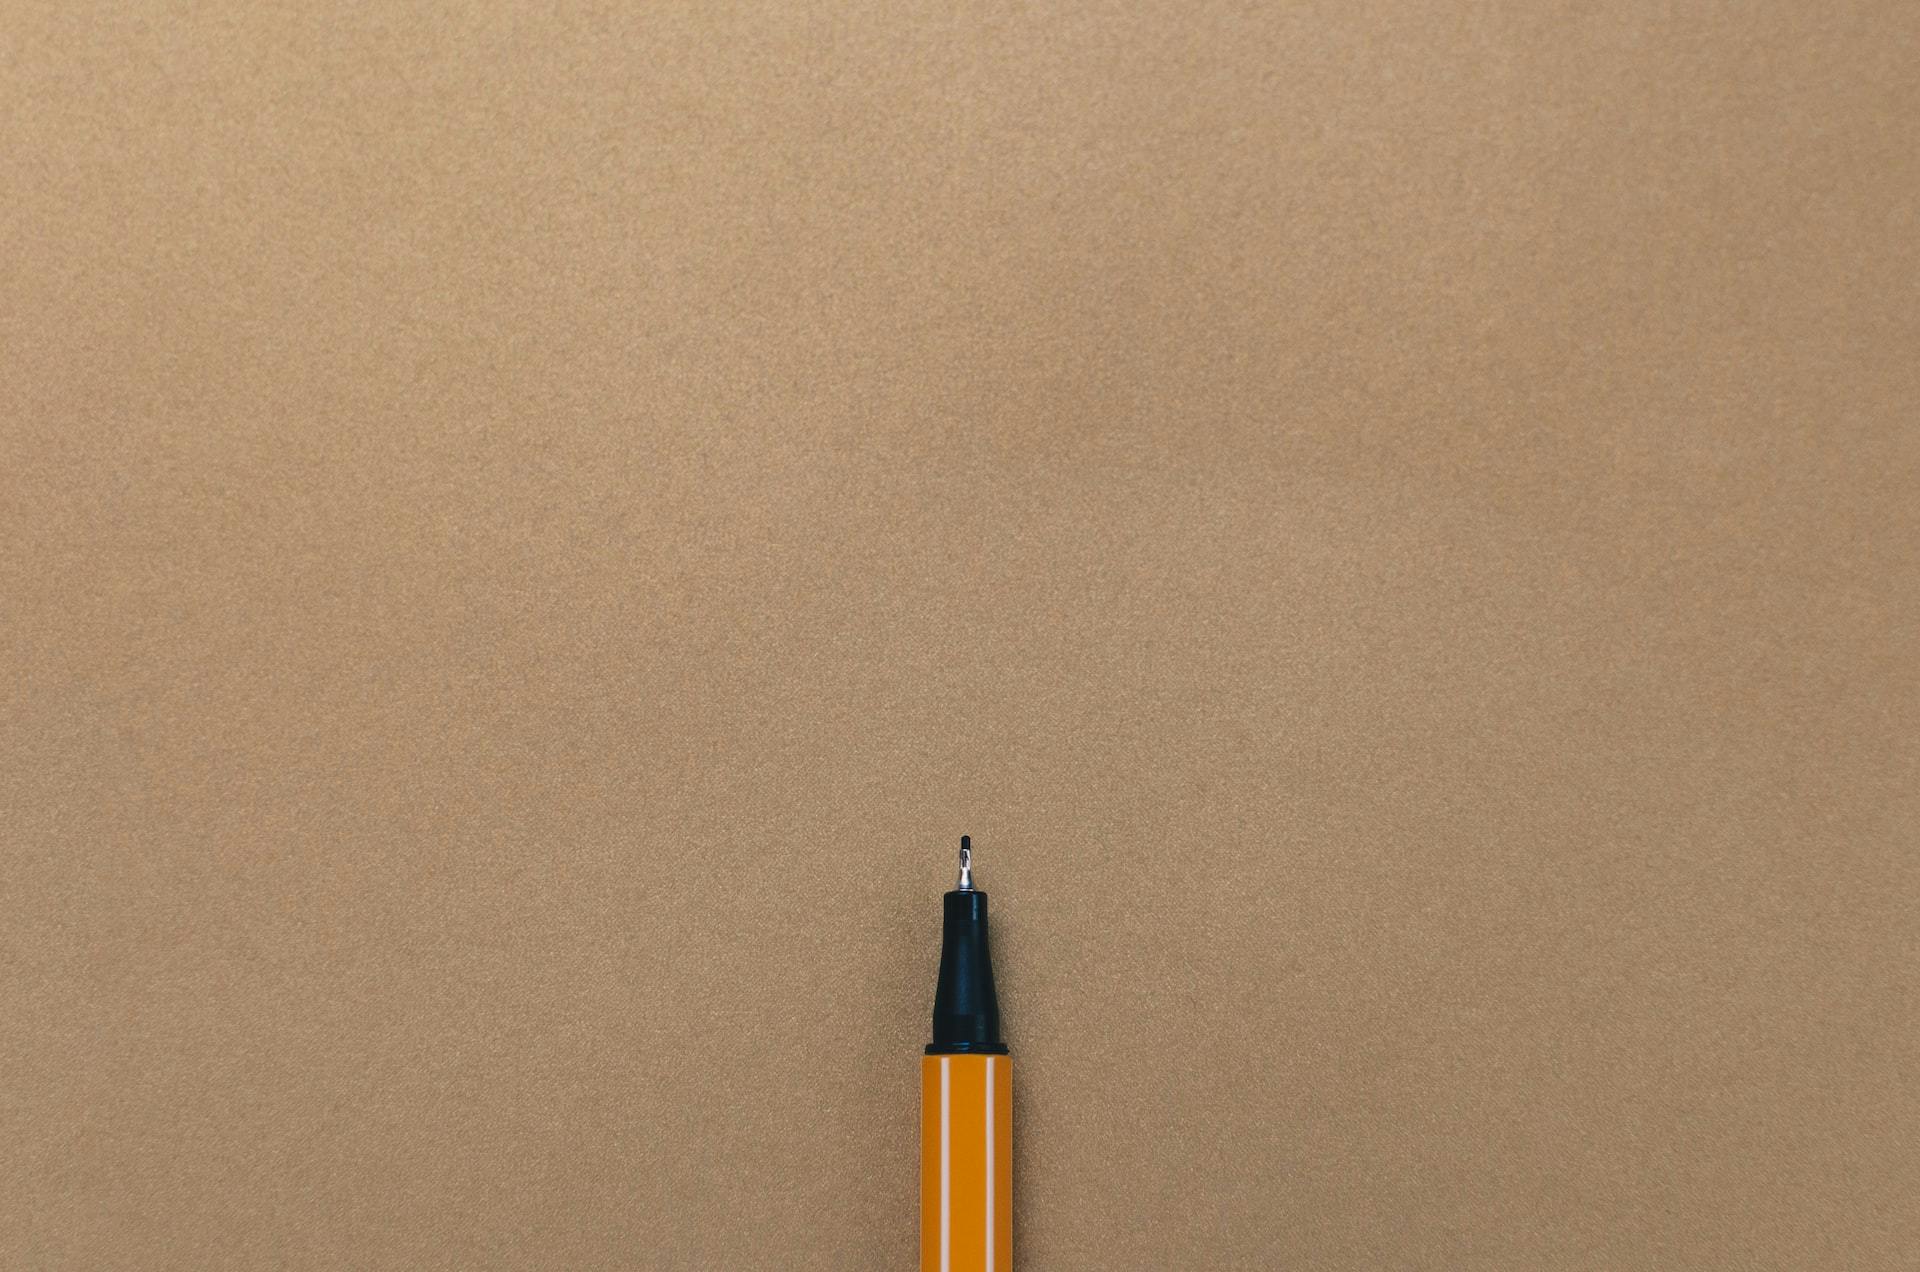 Single pen on a beige background